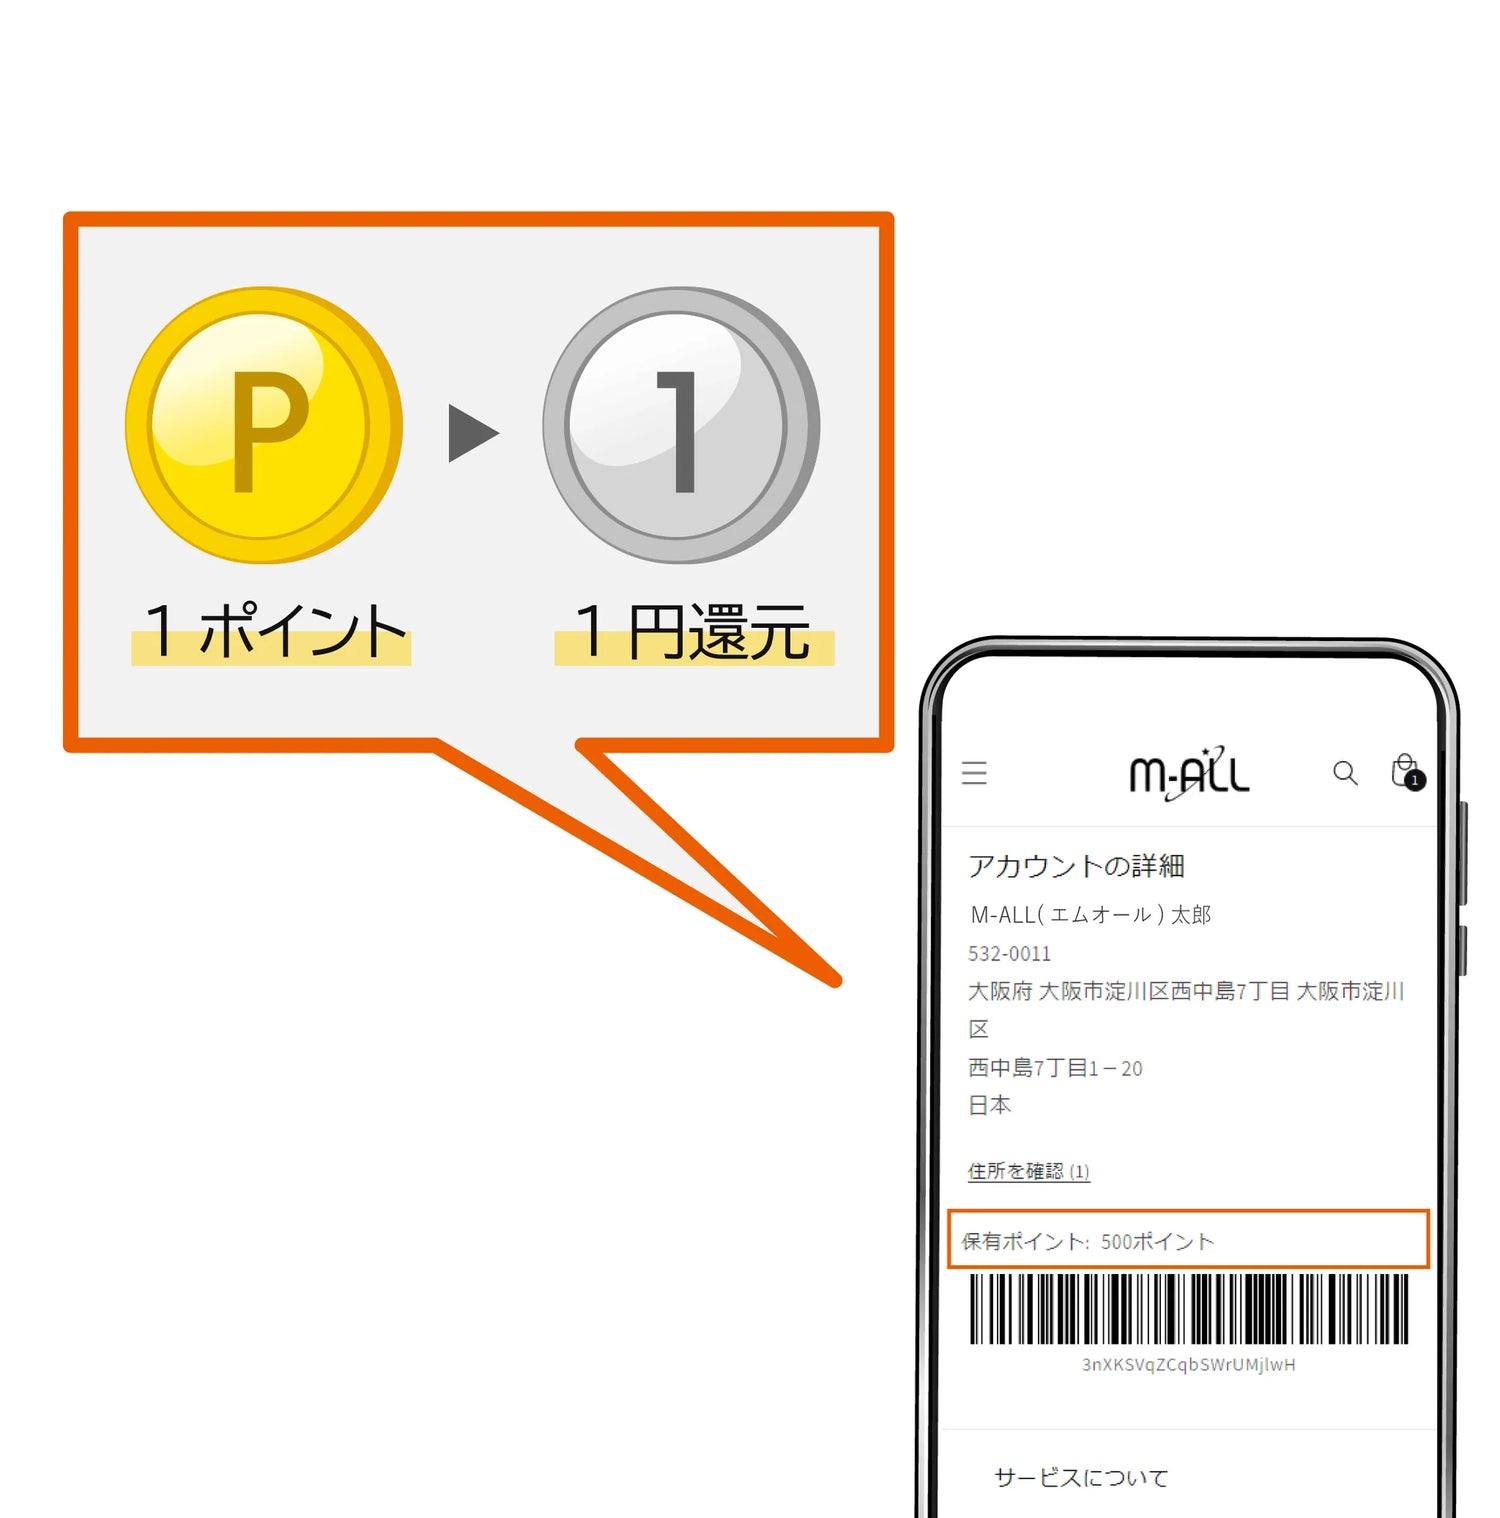 アカウント画面のバーコード下に、保有ポイントが表示されます。1ポイントにつき1円として使用できます。